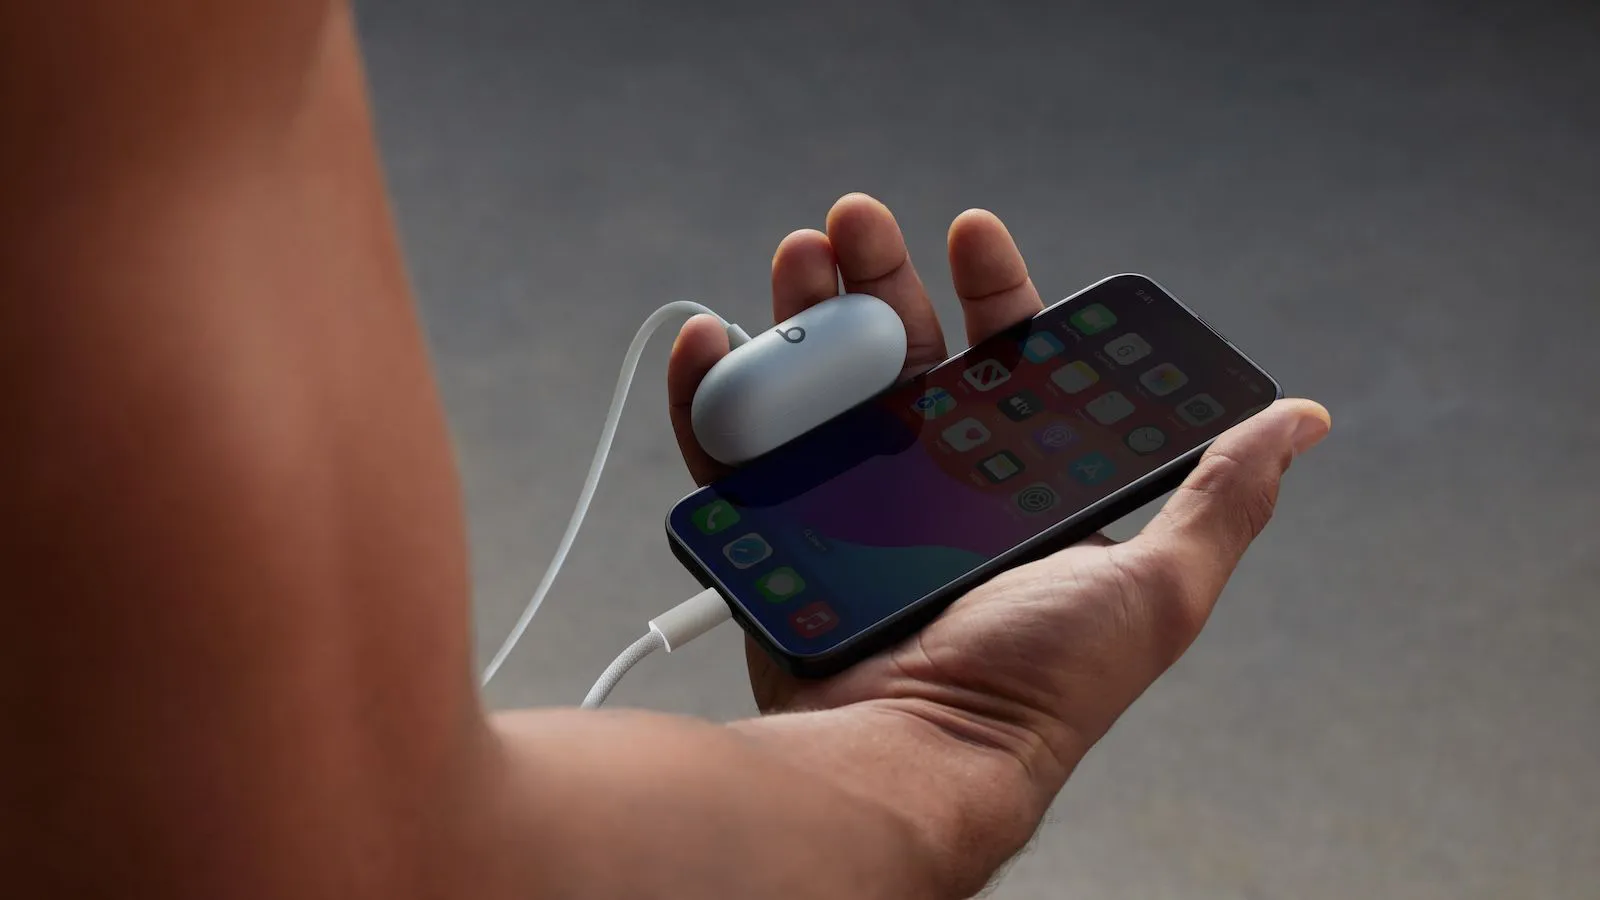 Với thời lượng pin lên đến 18 giờ trên tai nghe, hầu hết người dùng có thể thoải mái sử dụng Beats Solo Buds nhiều ngày mà không cần sạc lại. Nhưng khi cần sạc, người dùng chỉ cần kết nối nguồn điện với cổng USB-C trên hộp sạc, nguồn điện đó thậm chí có thể là iPhone 15. Tính năng Fast Fuel cung cấp một giờ phát lại chỉ với 5 phút sạc.